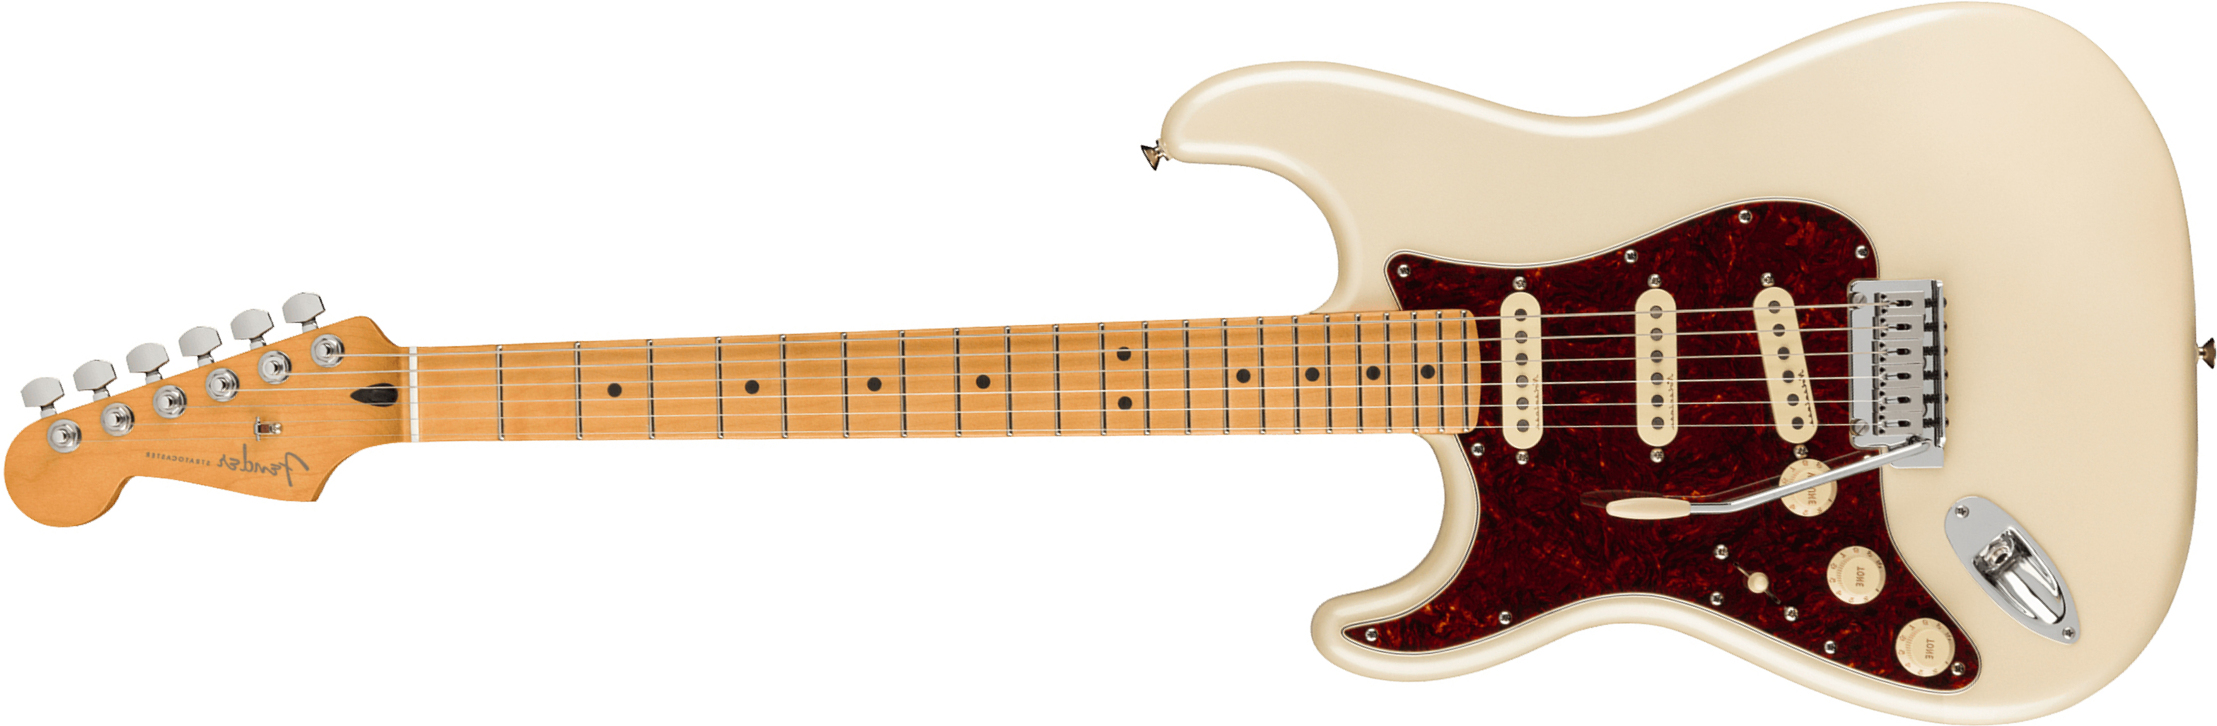 Fender Strat Player Plus Lh Mex Gaucher 3s Trem Mn - Olympic Pearl - Linkshandige elektrische gitaar - Main picture